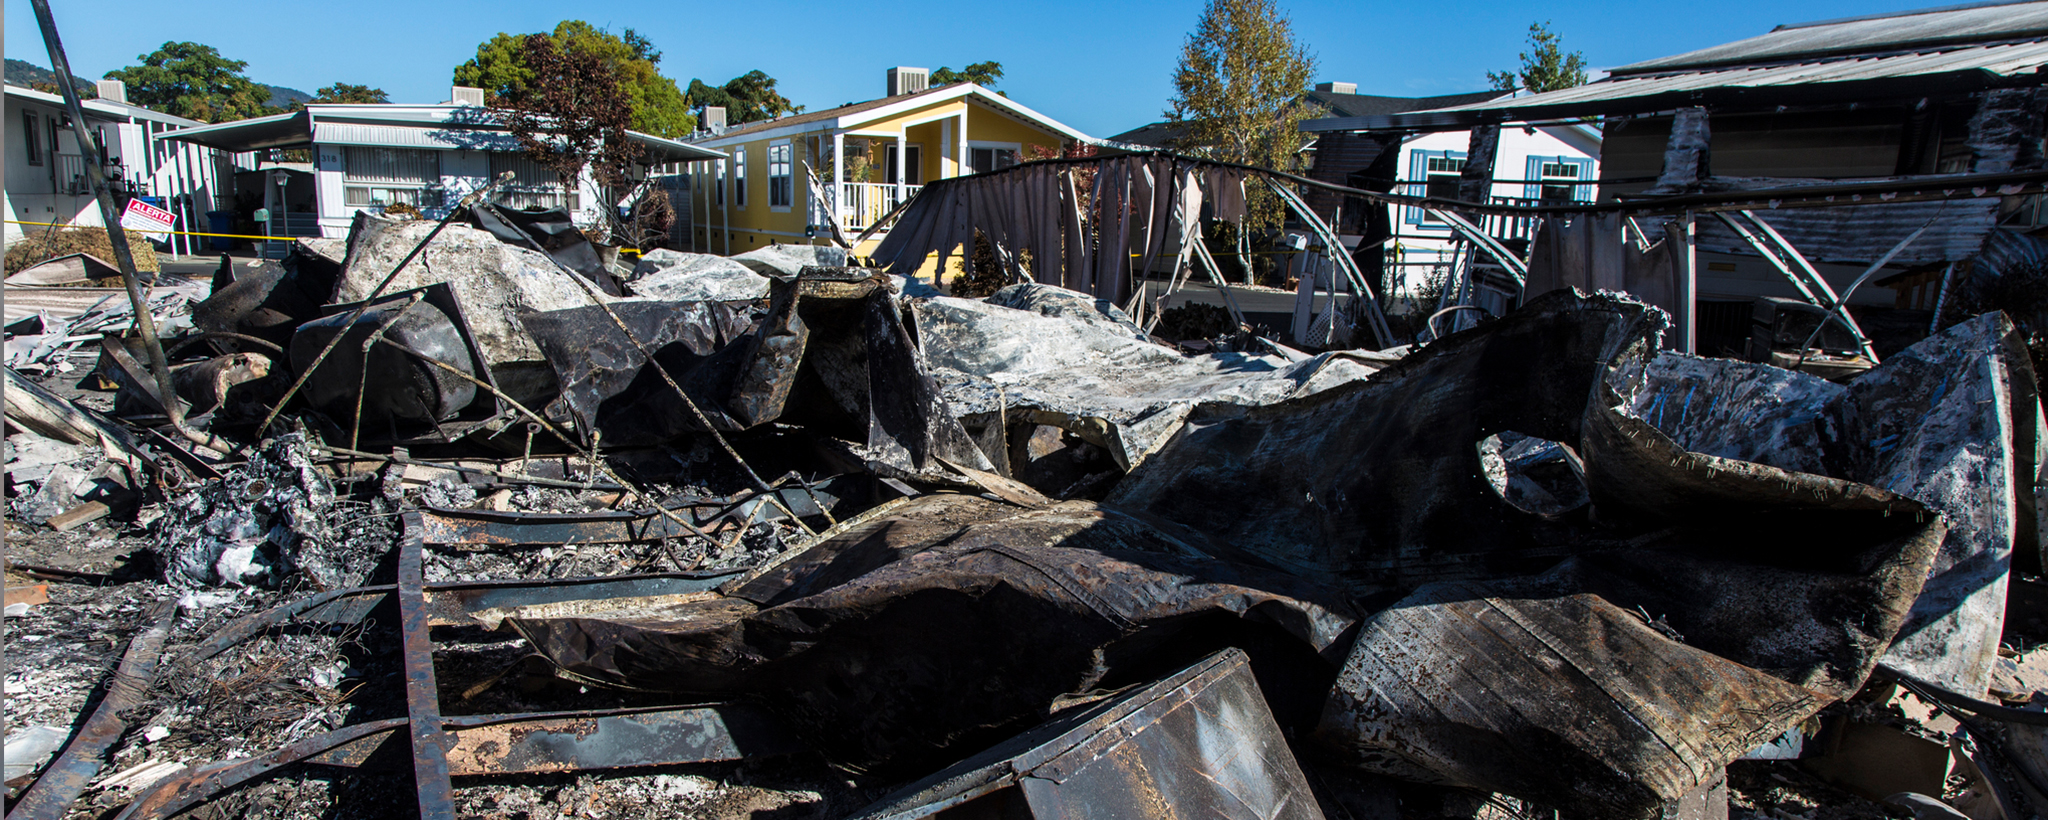 Los restos de una casa después de un incendio.